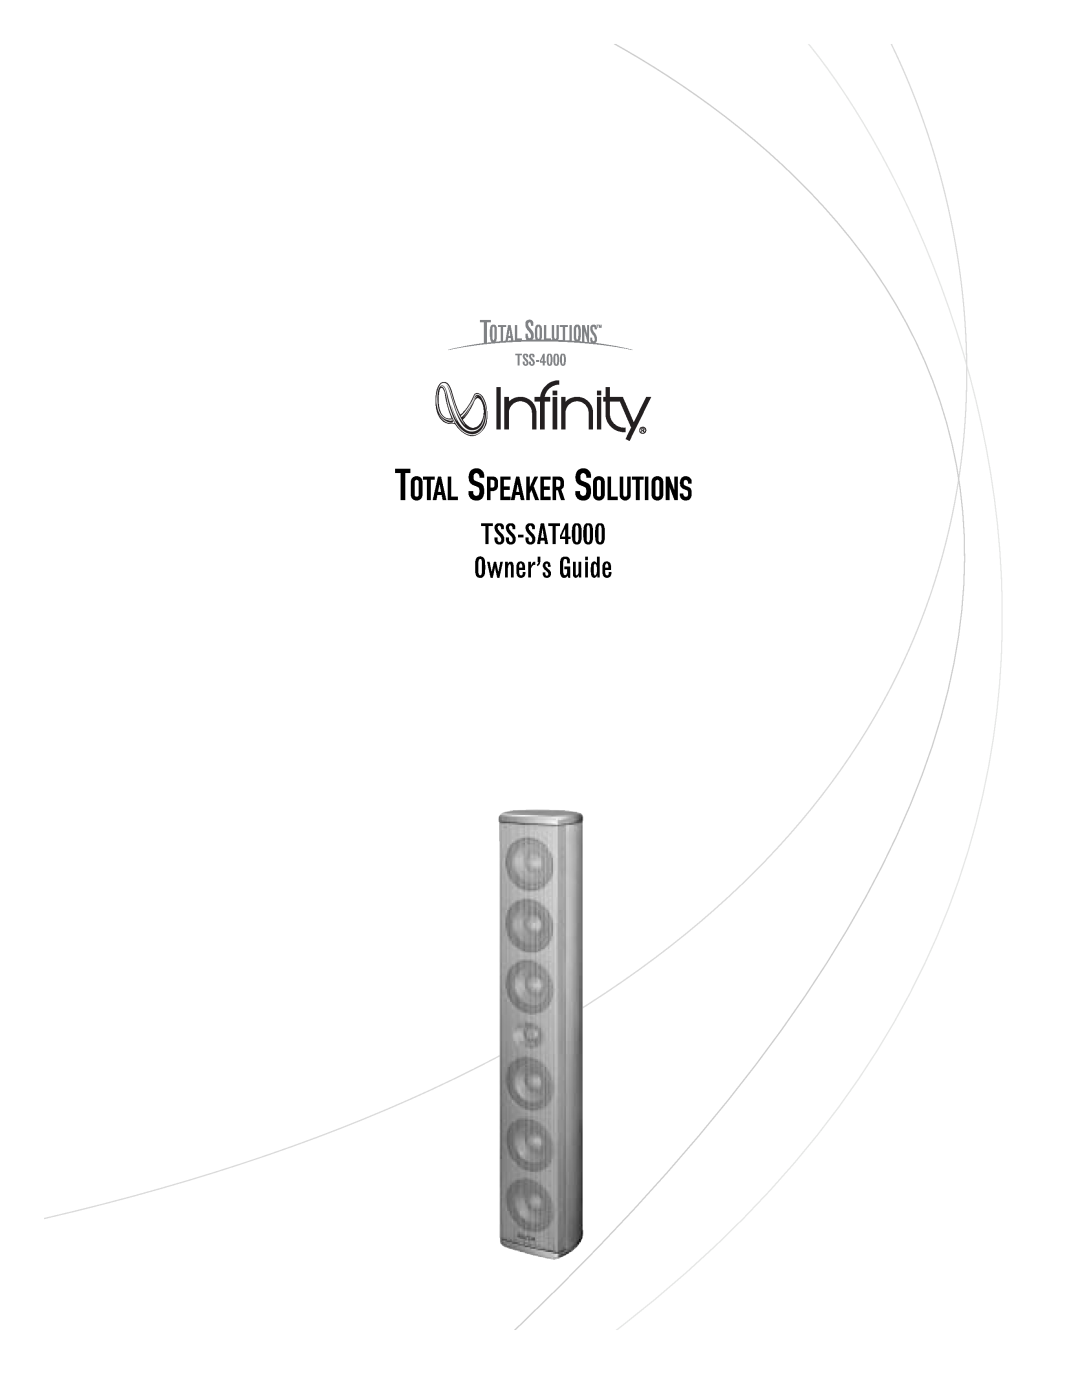 Infinity manual Total Speaker Solutions, TSS-SAT4000 Owner’s Guide, TSS-4000 